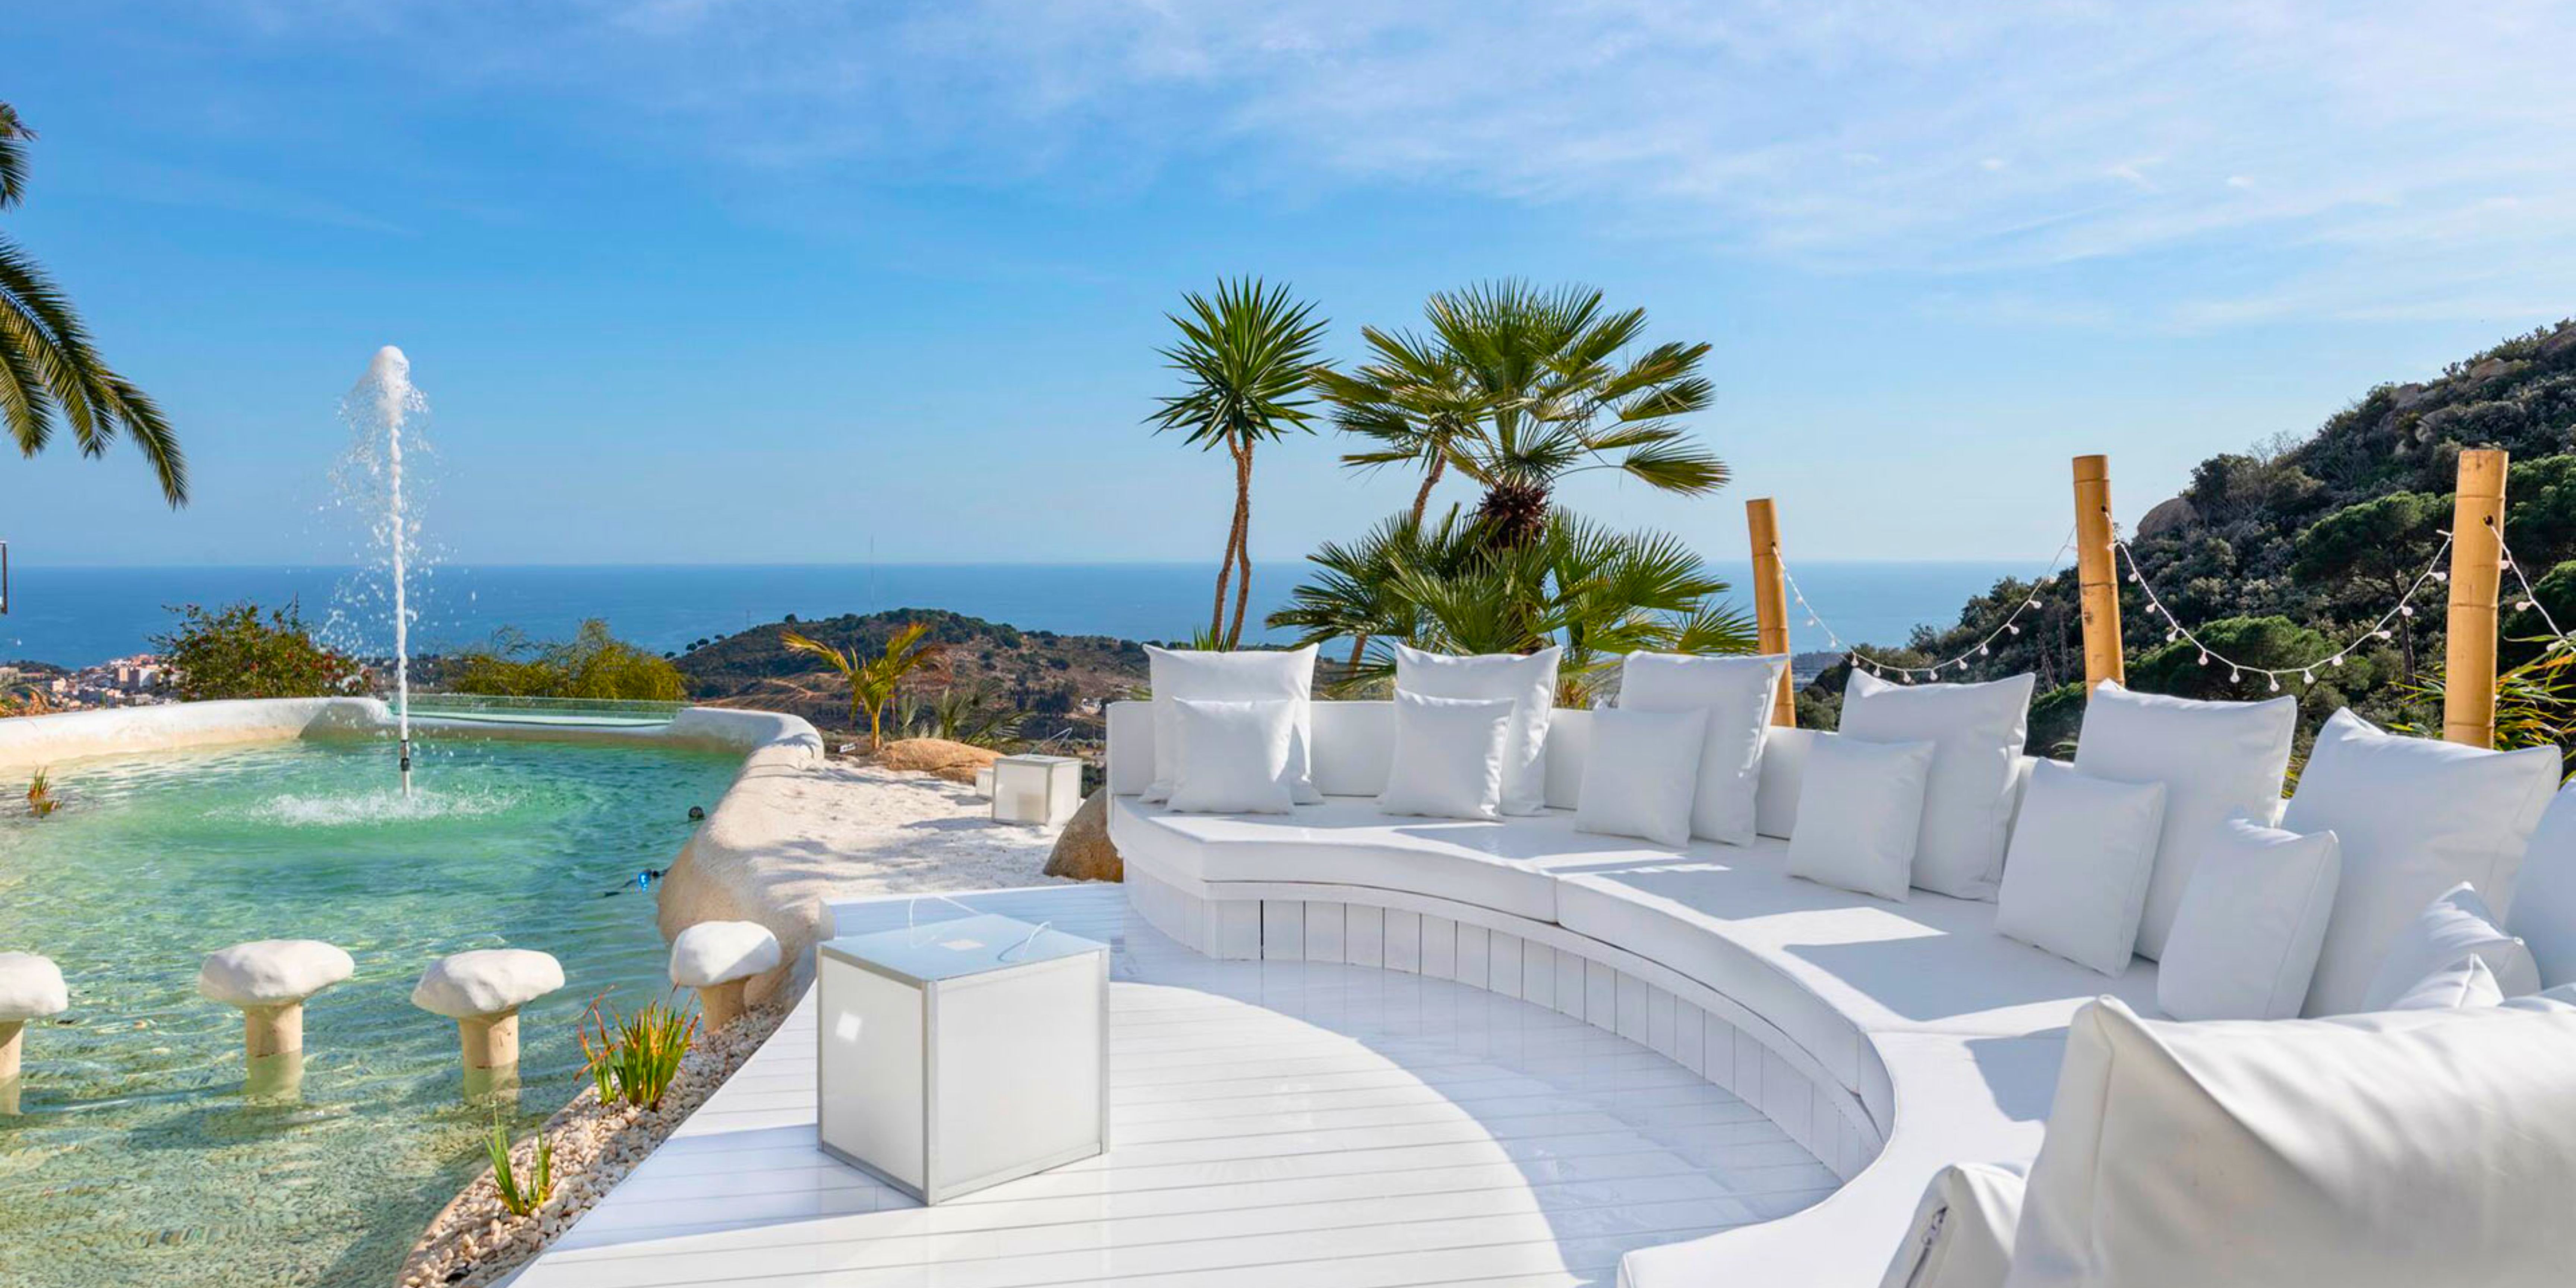 La terrasse de la villa avec piscine offrant une vue sublime sur la mer de Barcelone